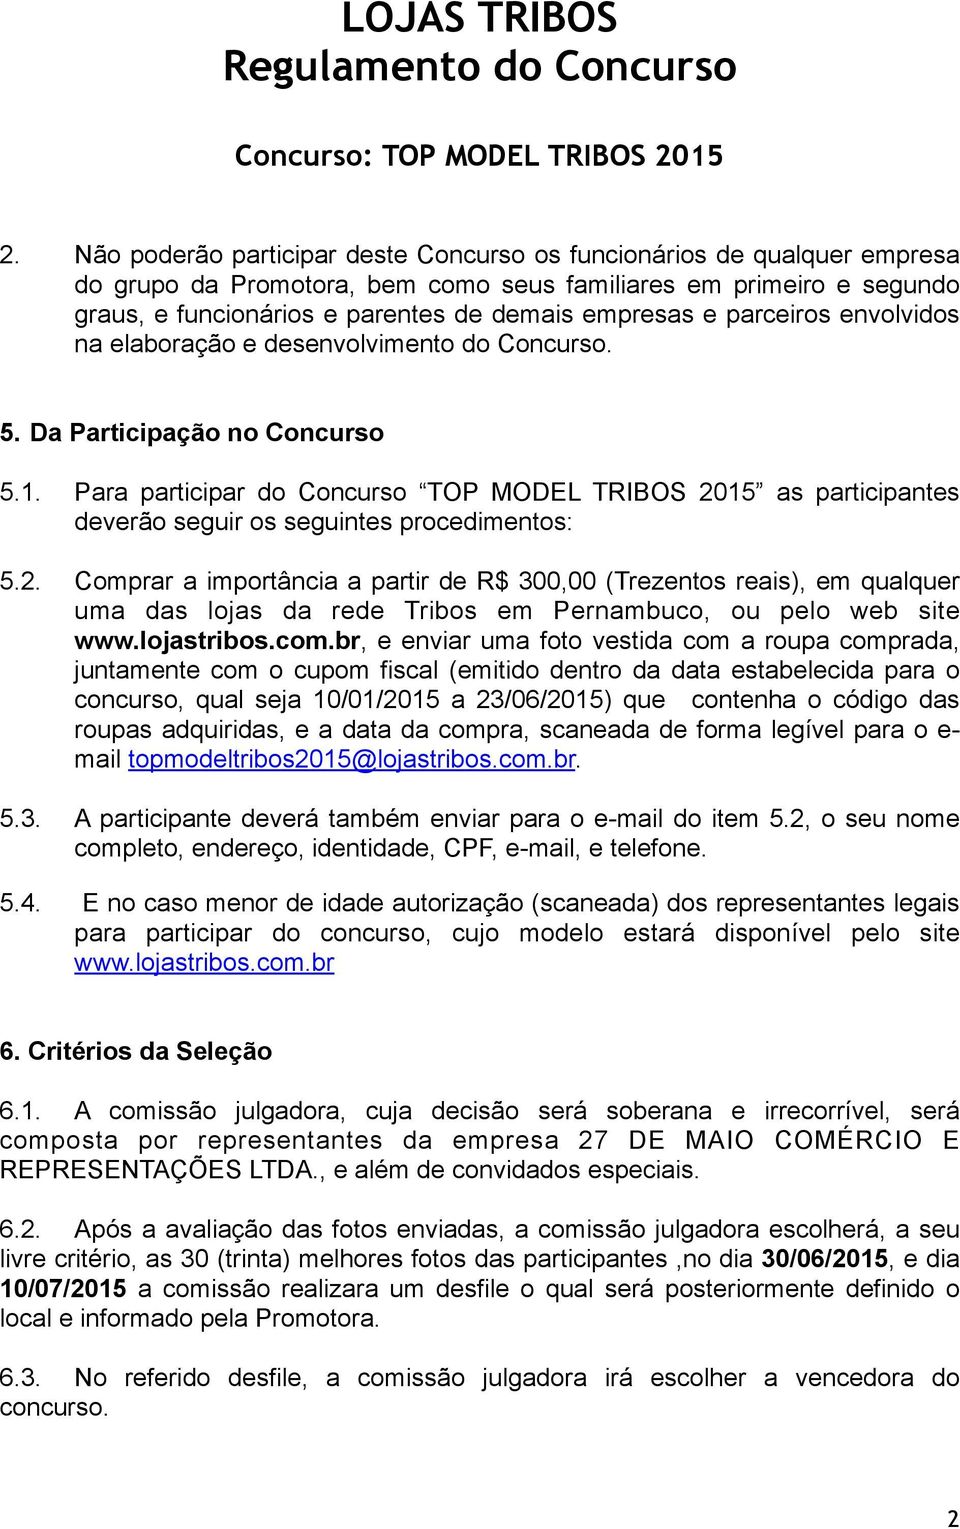 Para participar do Concurso TOP MODEL TRIBOS 2015 as participantes deverão seguir os seguintes procedimentos: 5.2. Comprar a importância a partir de R$ 300,00 (Trezentos reais), em qualquer uma das lojas da rede Tribos em Pernambuco, ou pelo web site www.